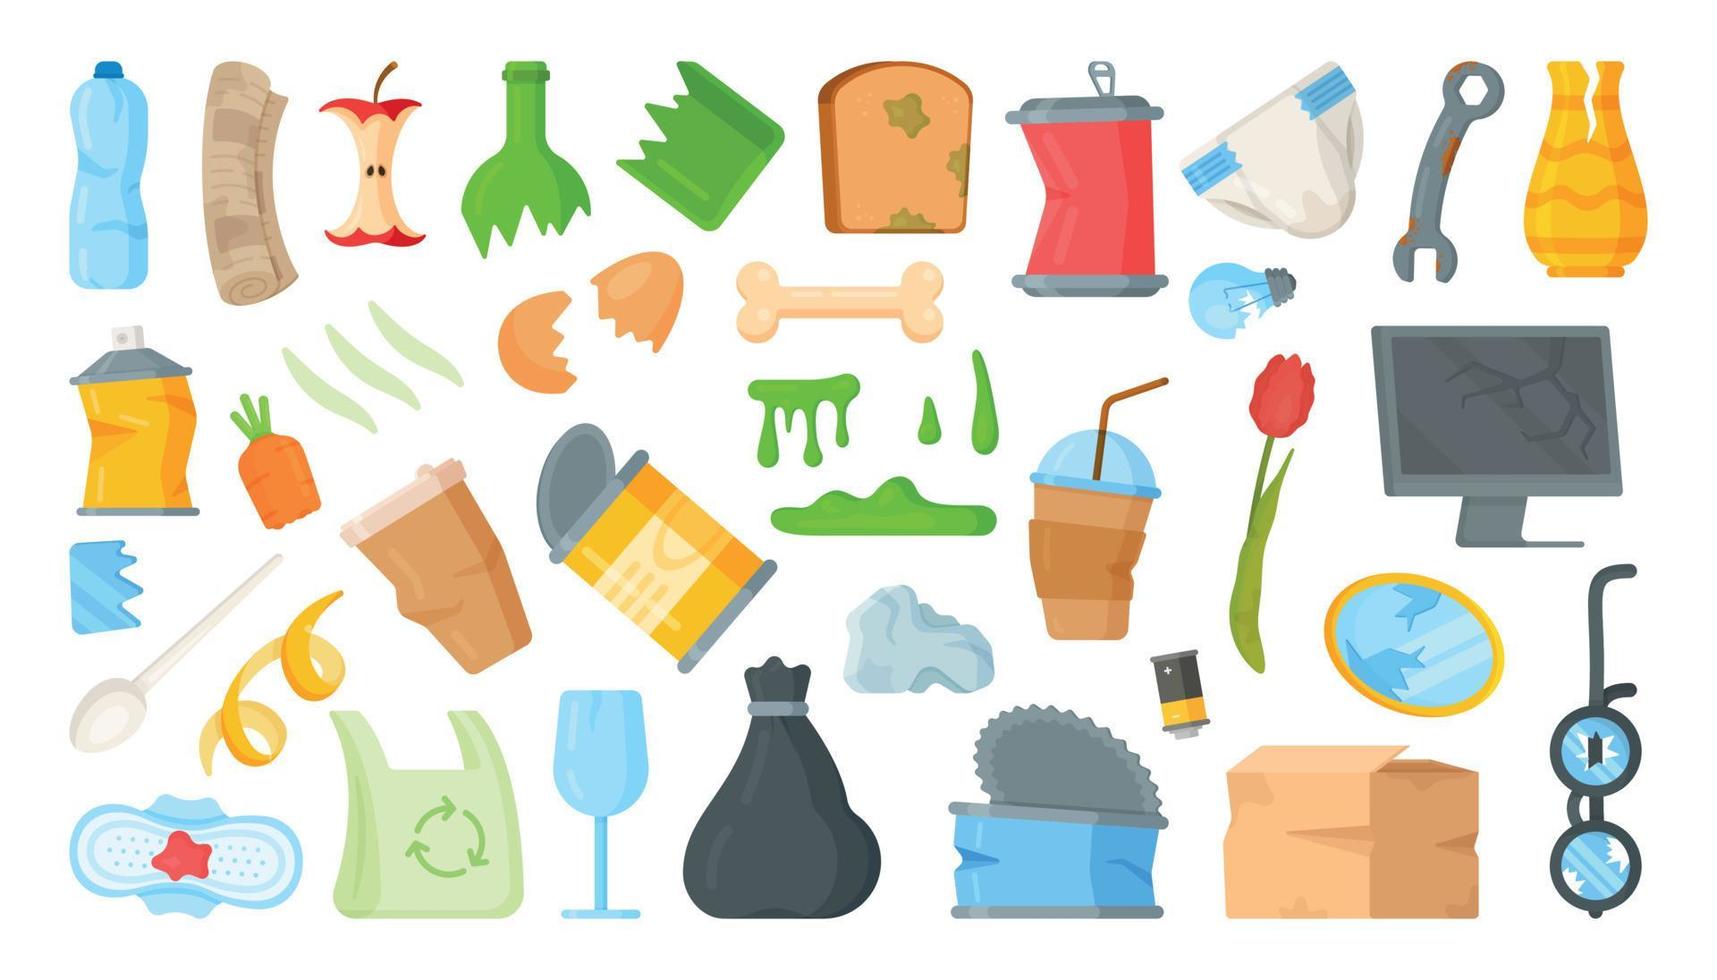 illustration vectorielle de la collecte des ordures dans un conteneur. bouteilles, canettes, conserves, restes, joints, objets cassés. vecteur